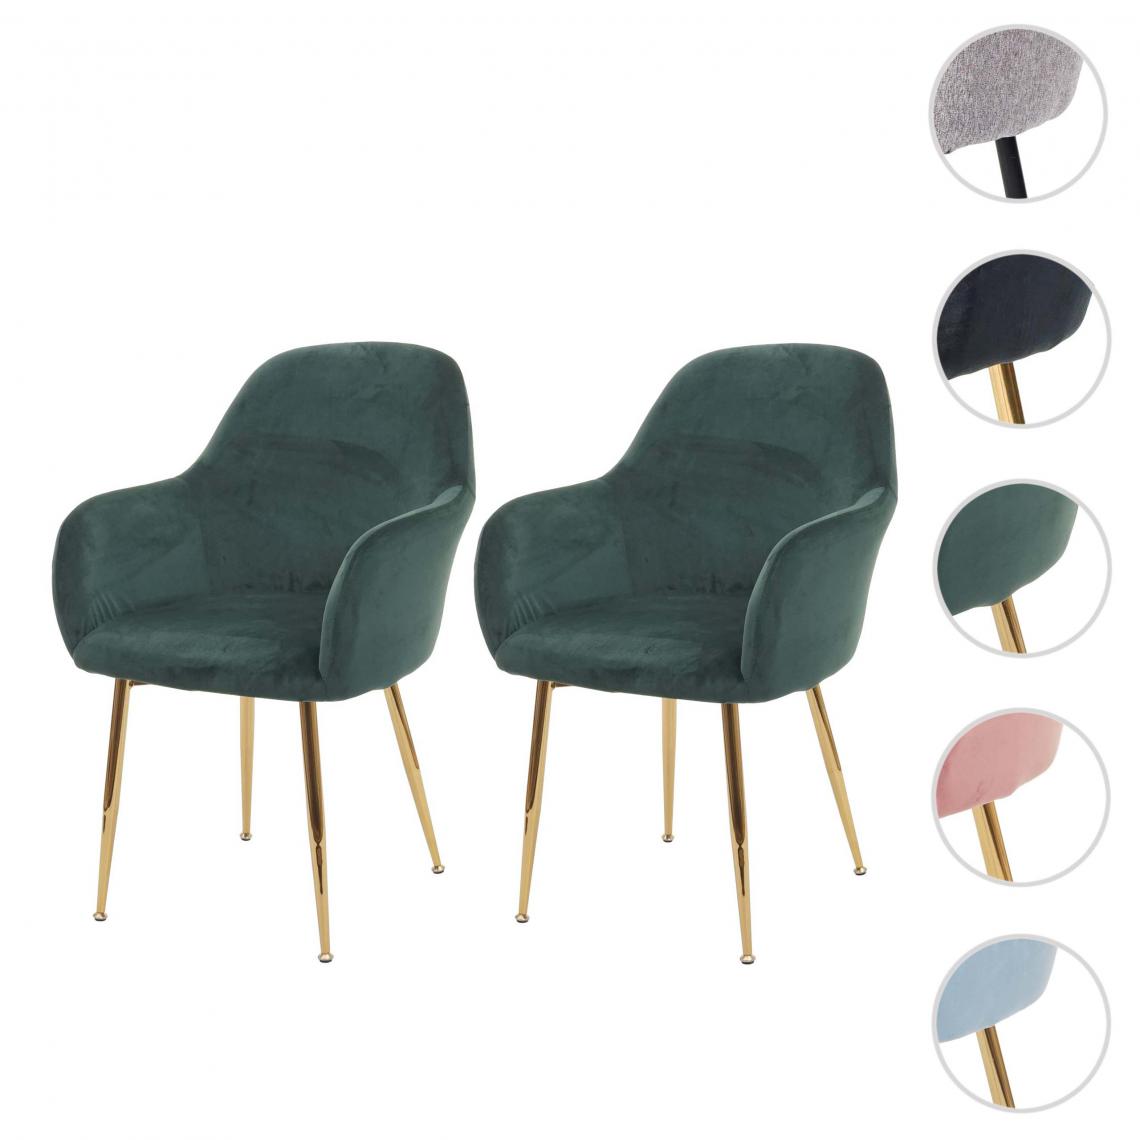 Mendler - 2x chaise de salle à manger HWC-F18, chaise de cuisine, design rétro ~ vert velours, pieds dorés - Chaises